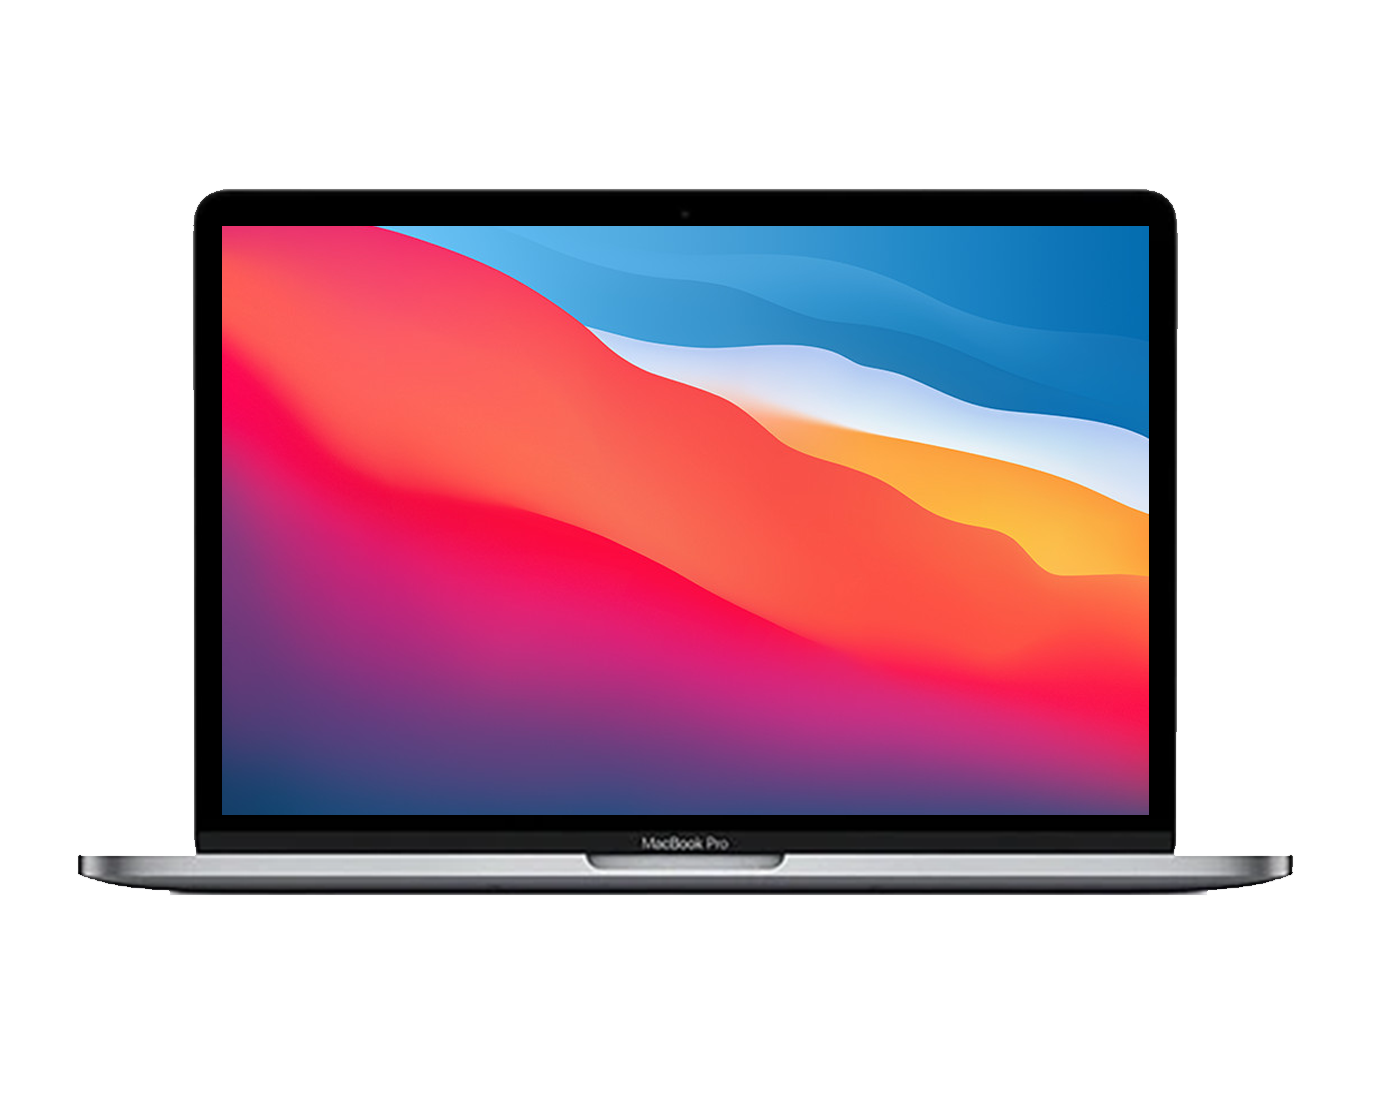 Apple Macbook Pro A2159 / Core I5 1,6ghz / 8Gb ram / 256Gb ssd / 13" superior a 2k / Mac OS 13.1 ¡Liquidación!